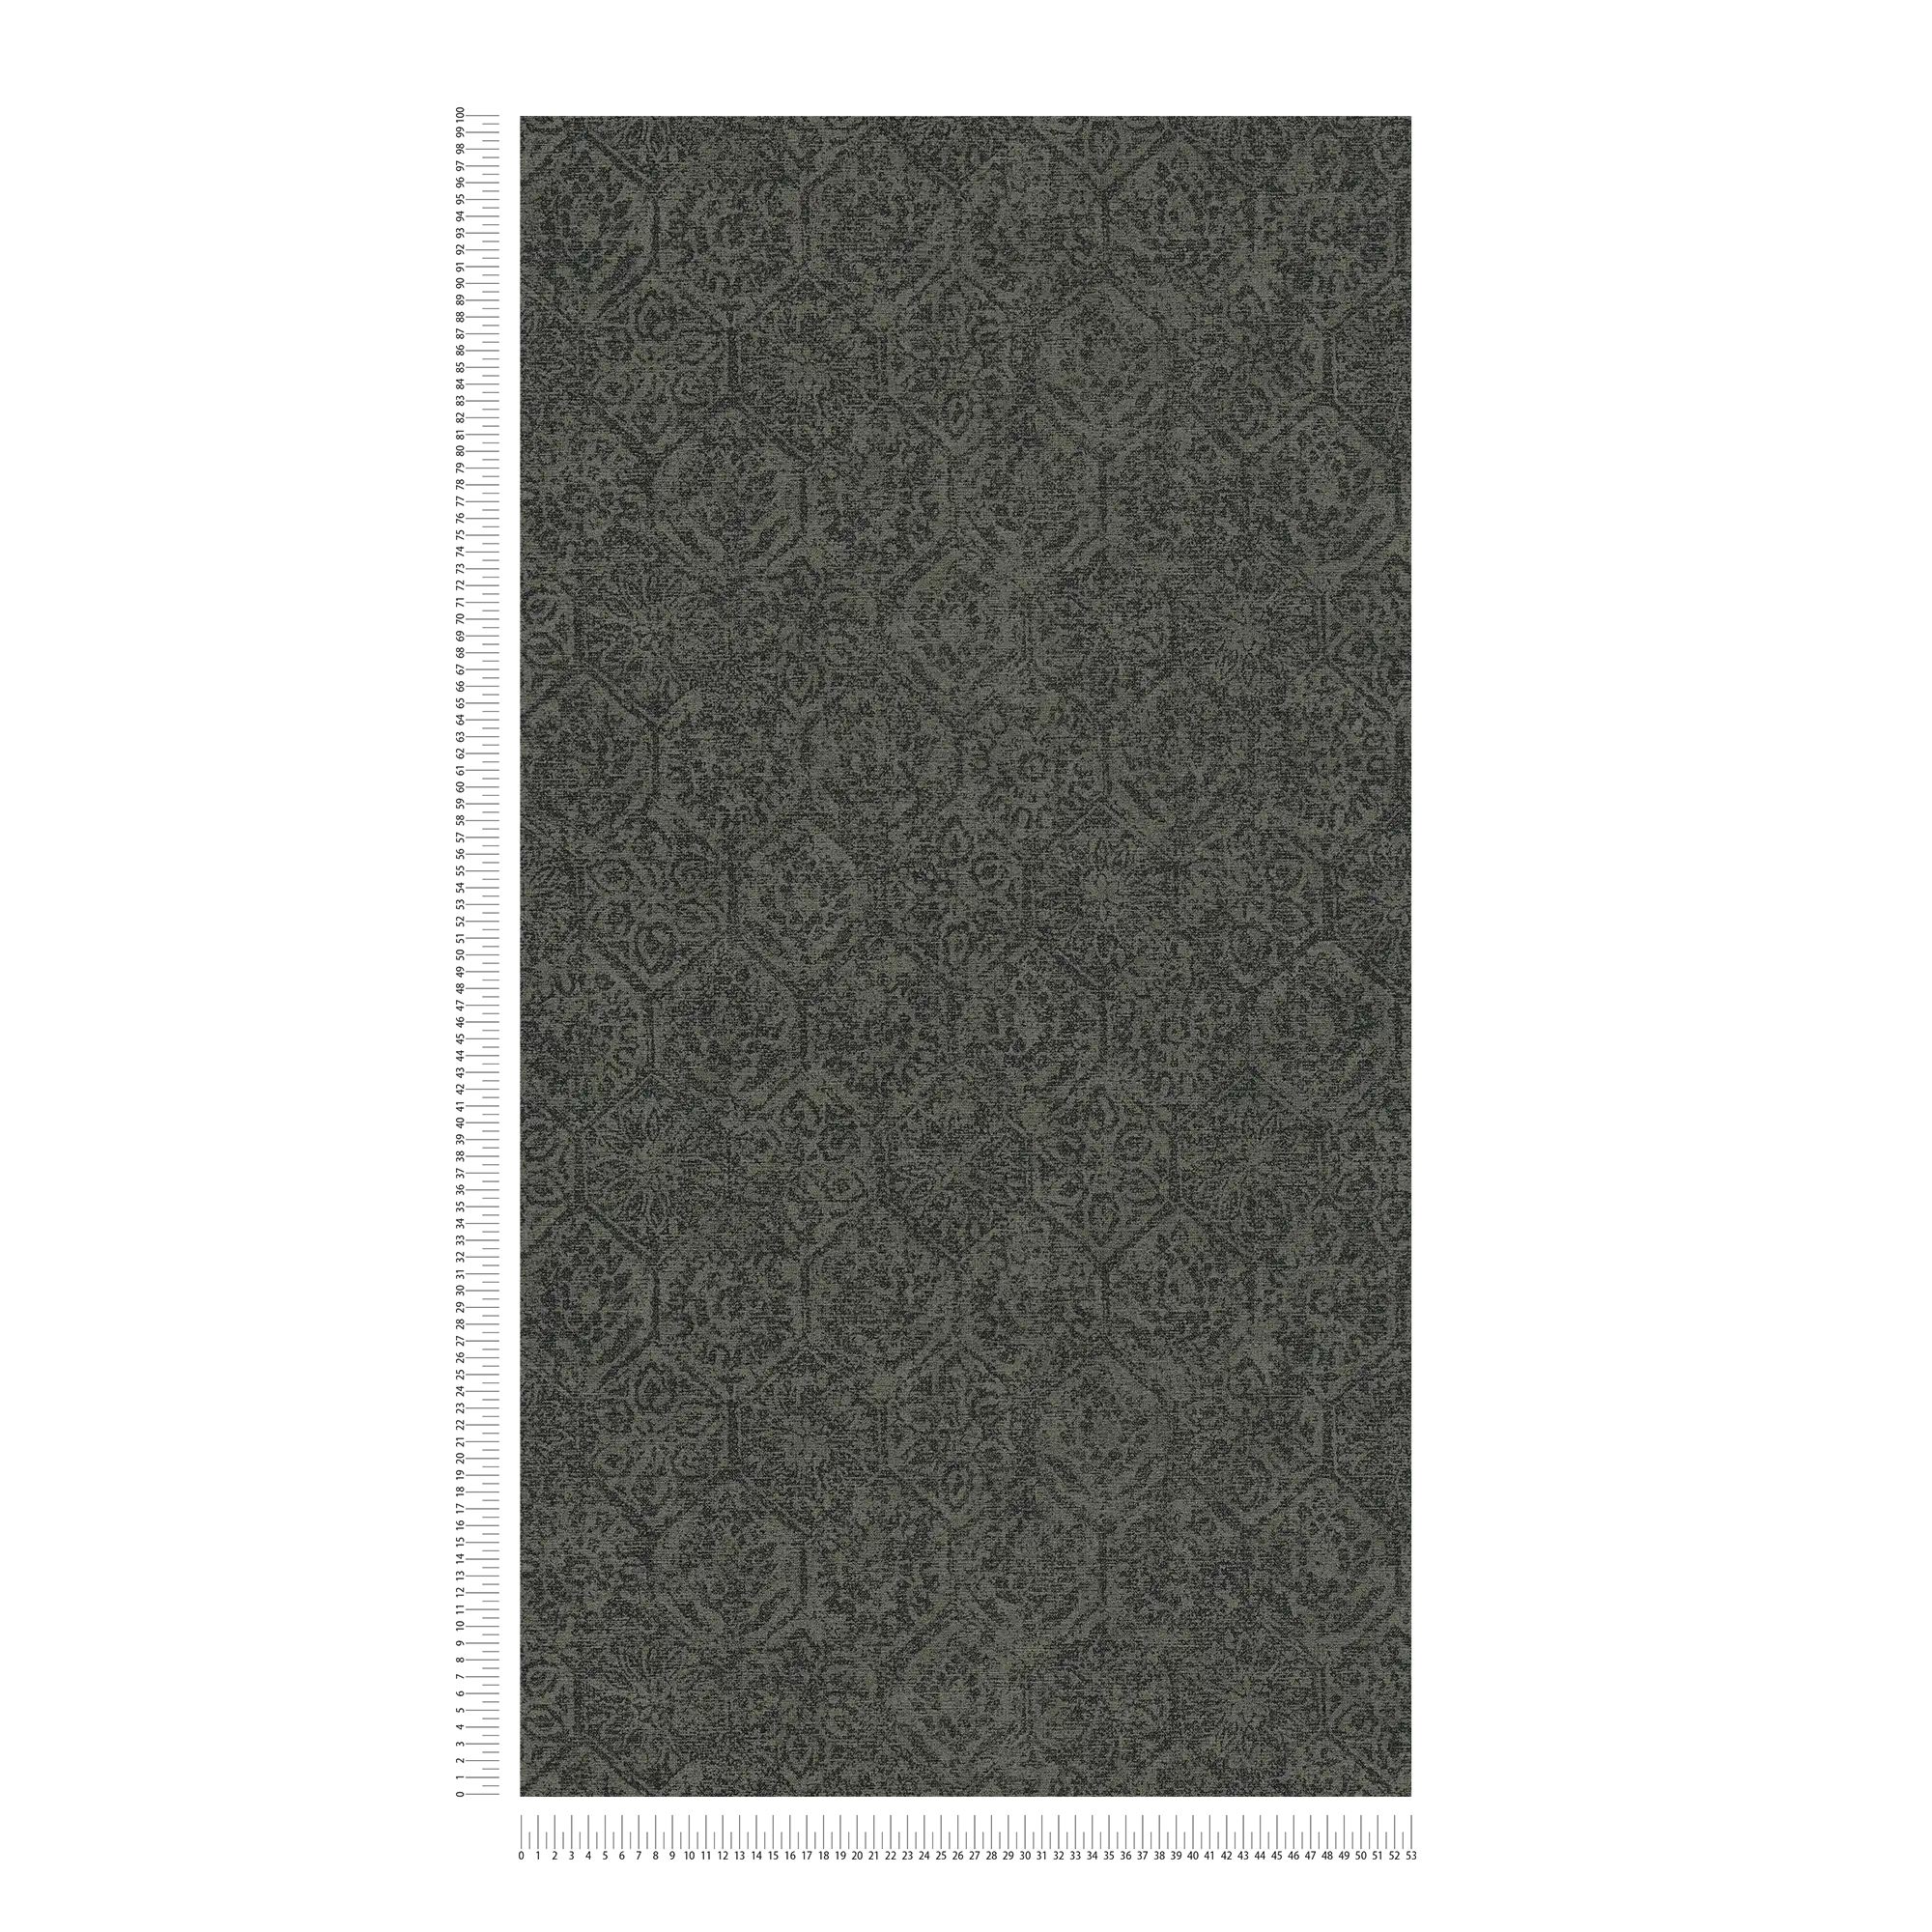             Wallpaper vintage pattern in floral used look - grey, black
        